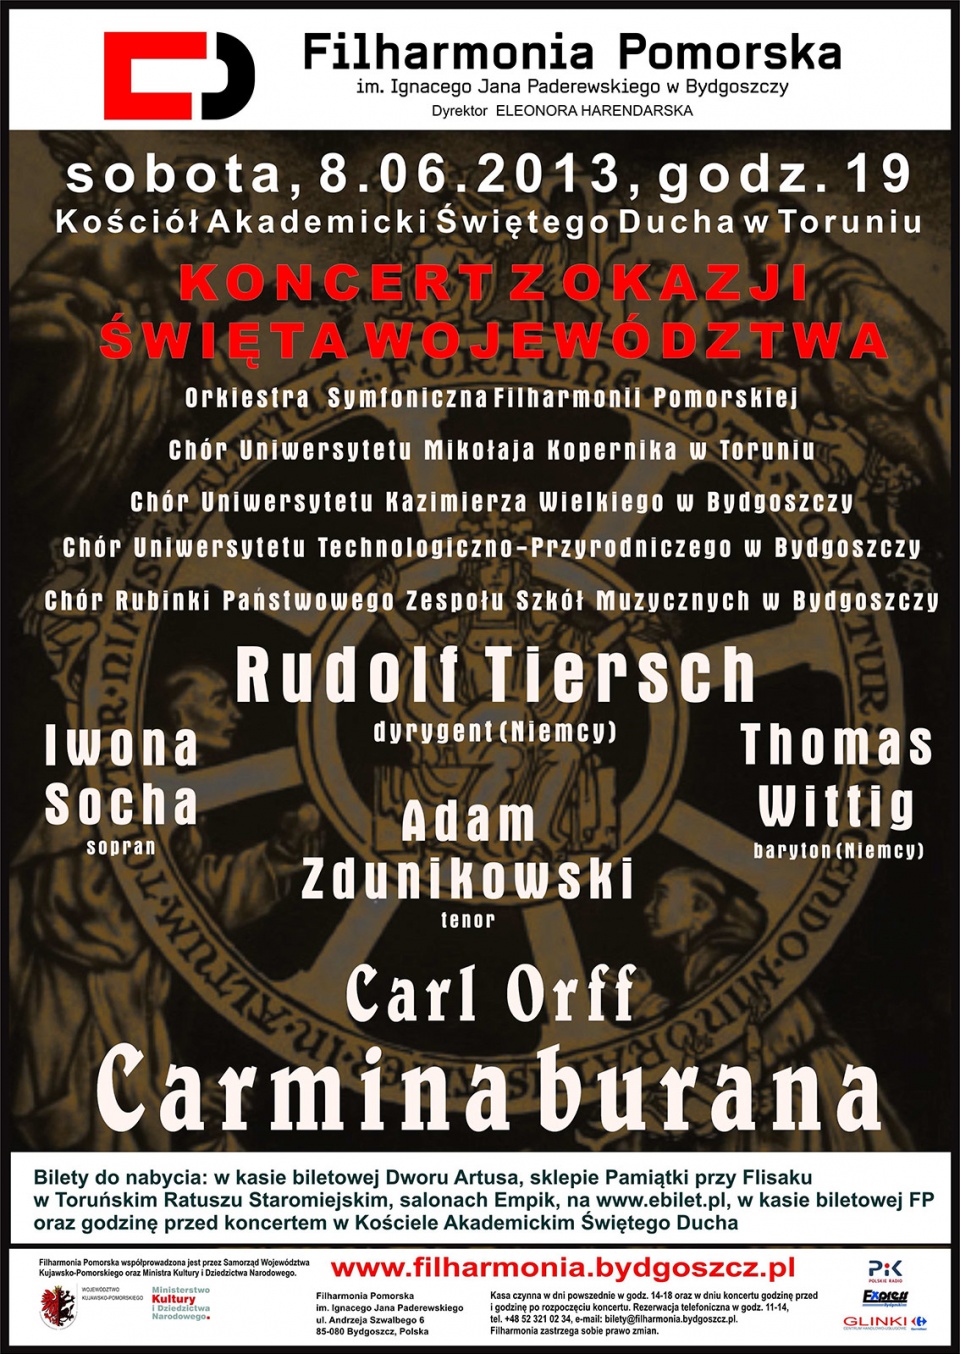 Święto Województwa Kujawsko-Pomorskiego zostanie uświetnione muzyką także przez Filharmonię Pomorską w Bydgoszczy.